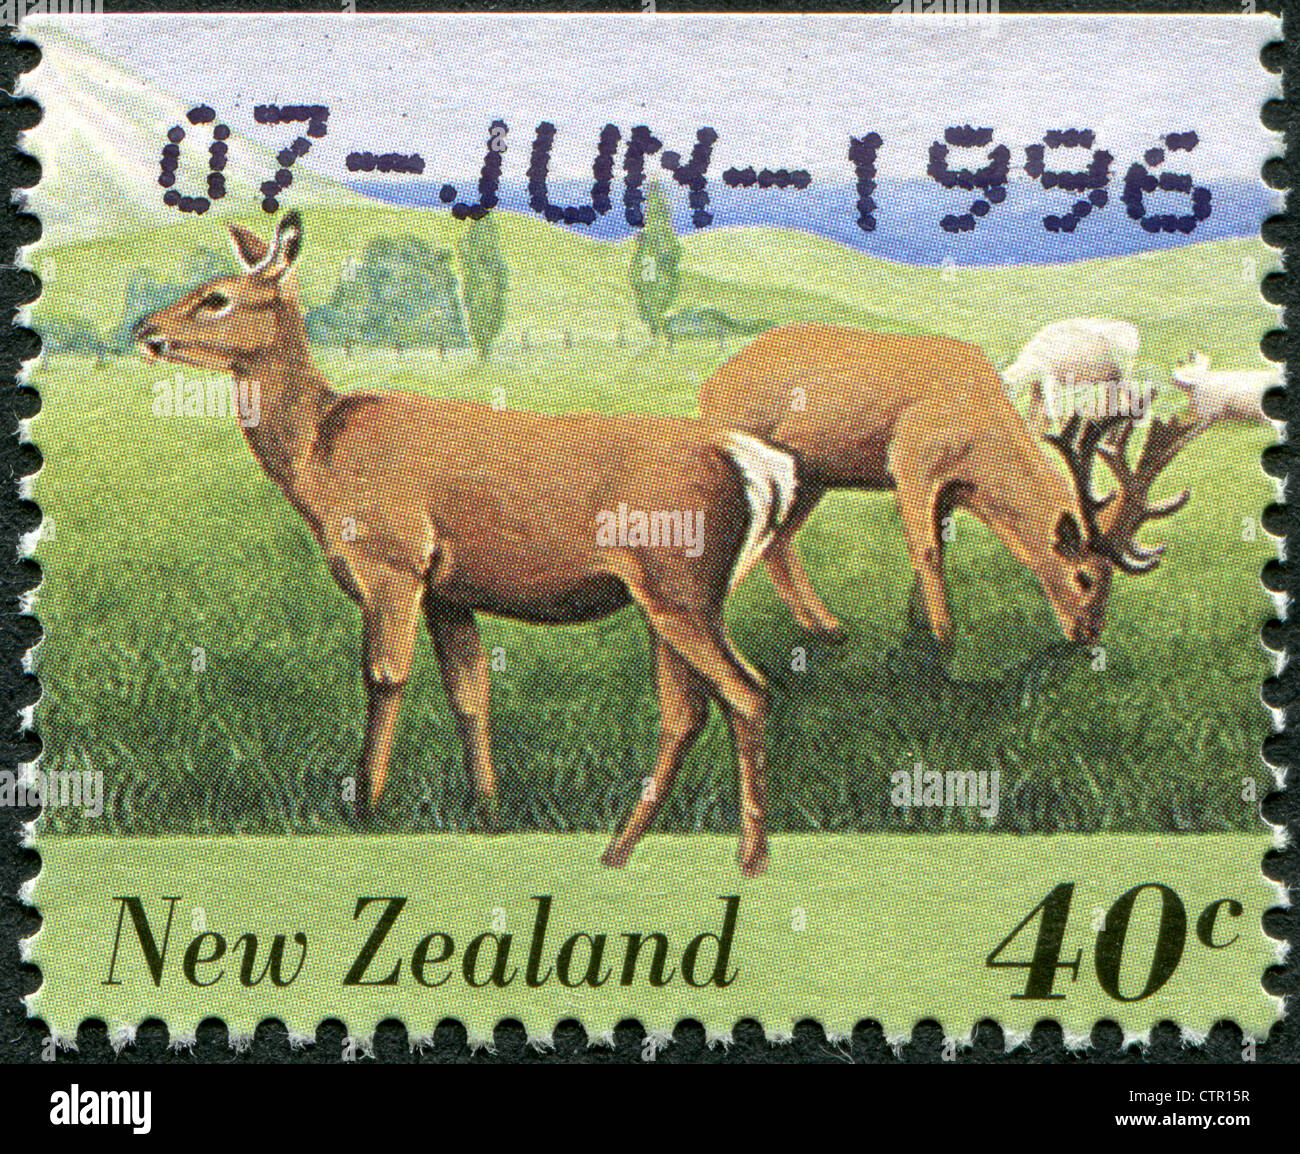 Nouvelle Zélande - circa 1995 : timbre imprimé en Nouvelle-Zélande, montre des animaux de ferme - Deer, circa 1995 Banque D'Images